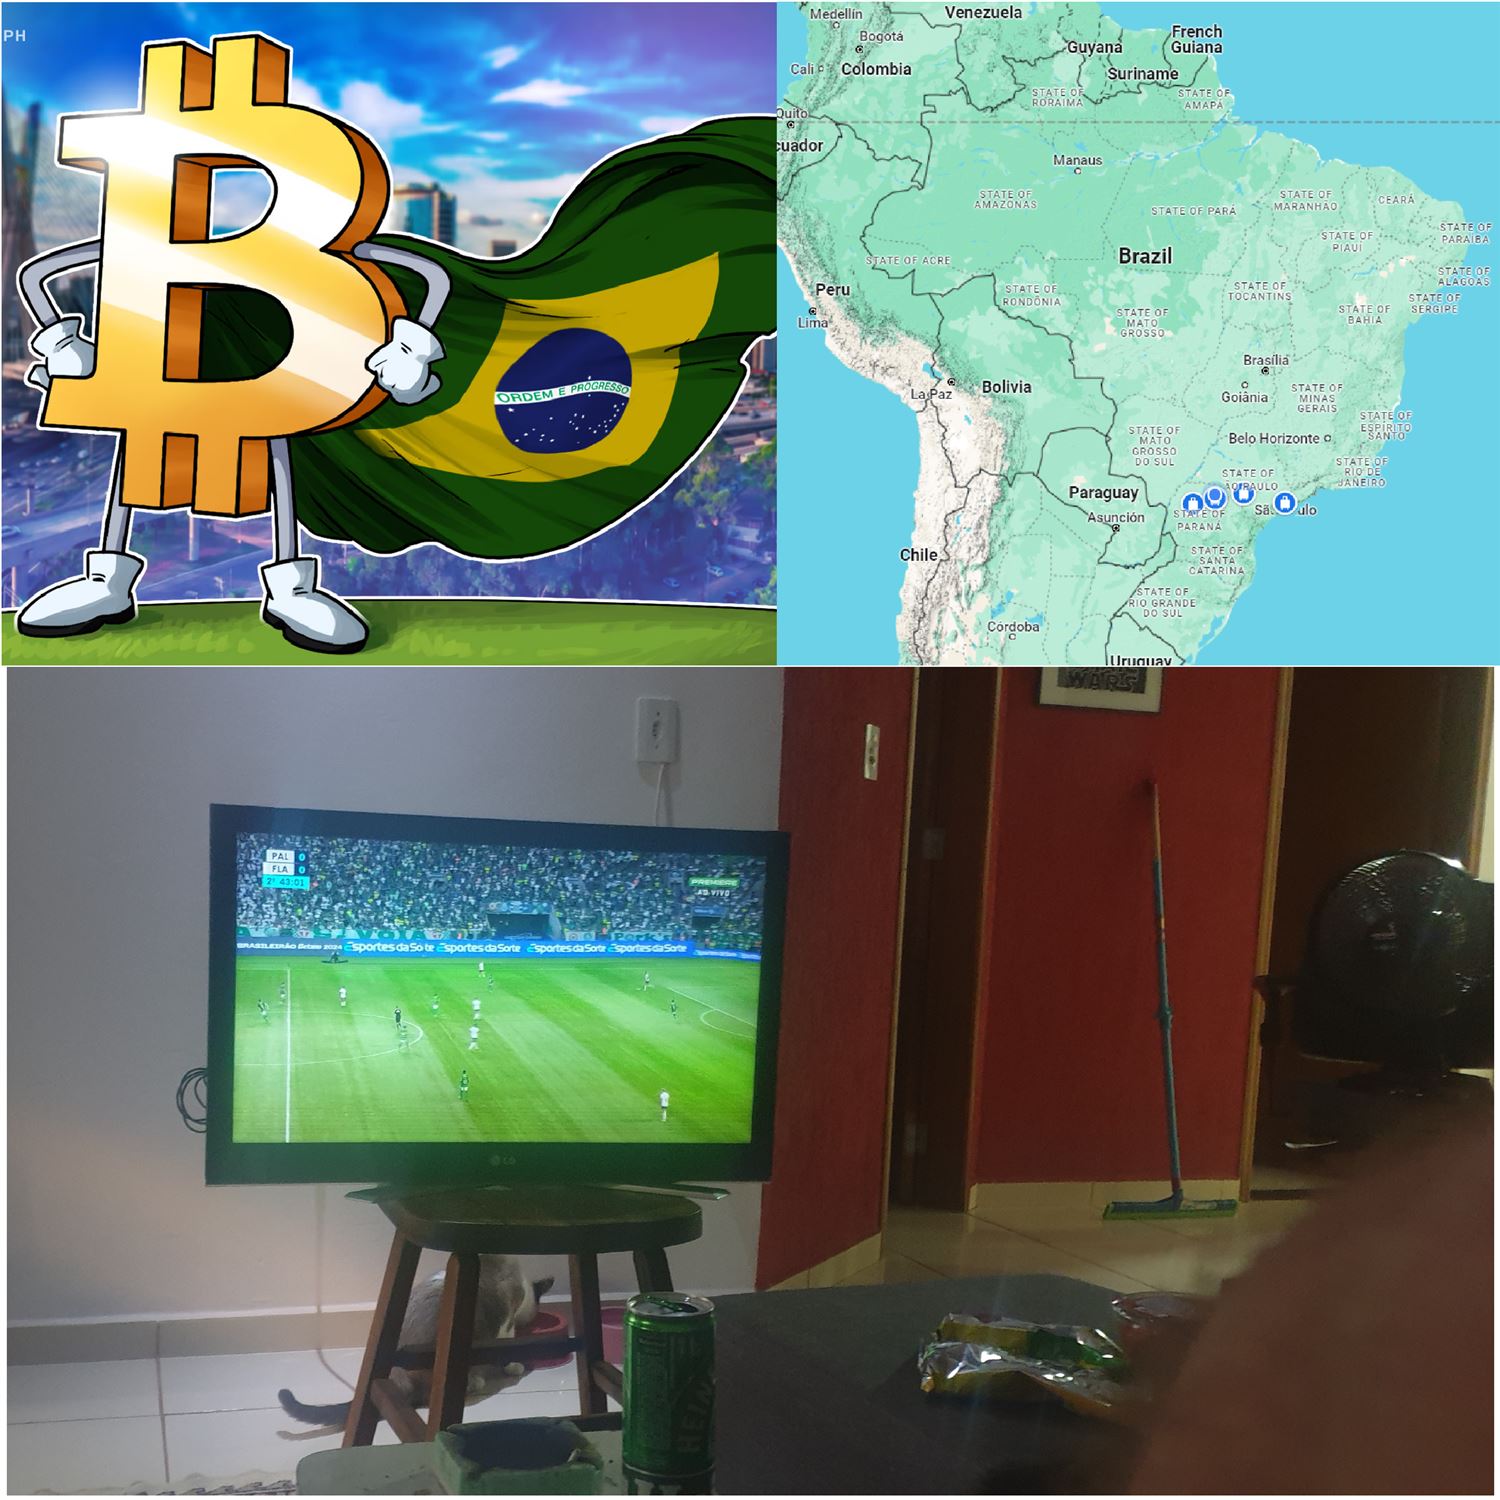 Bitcoiners in Brazil